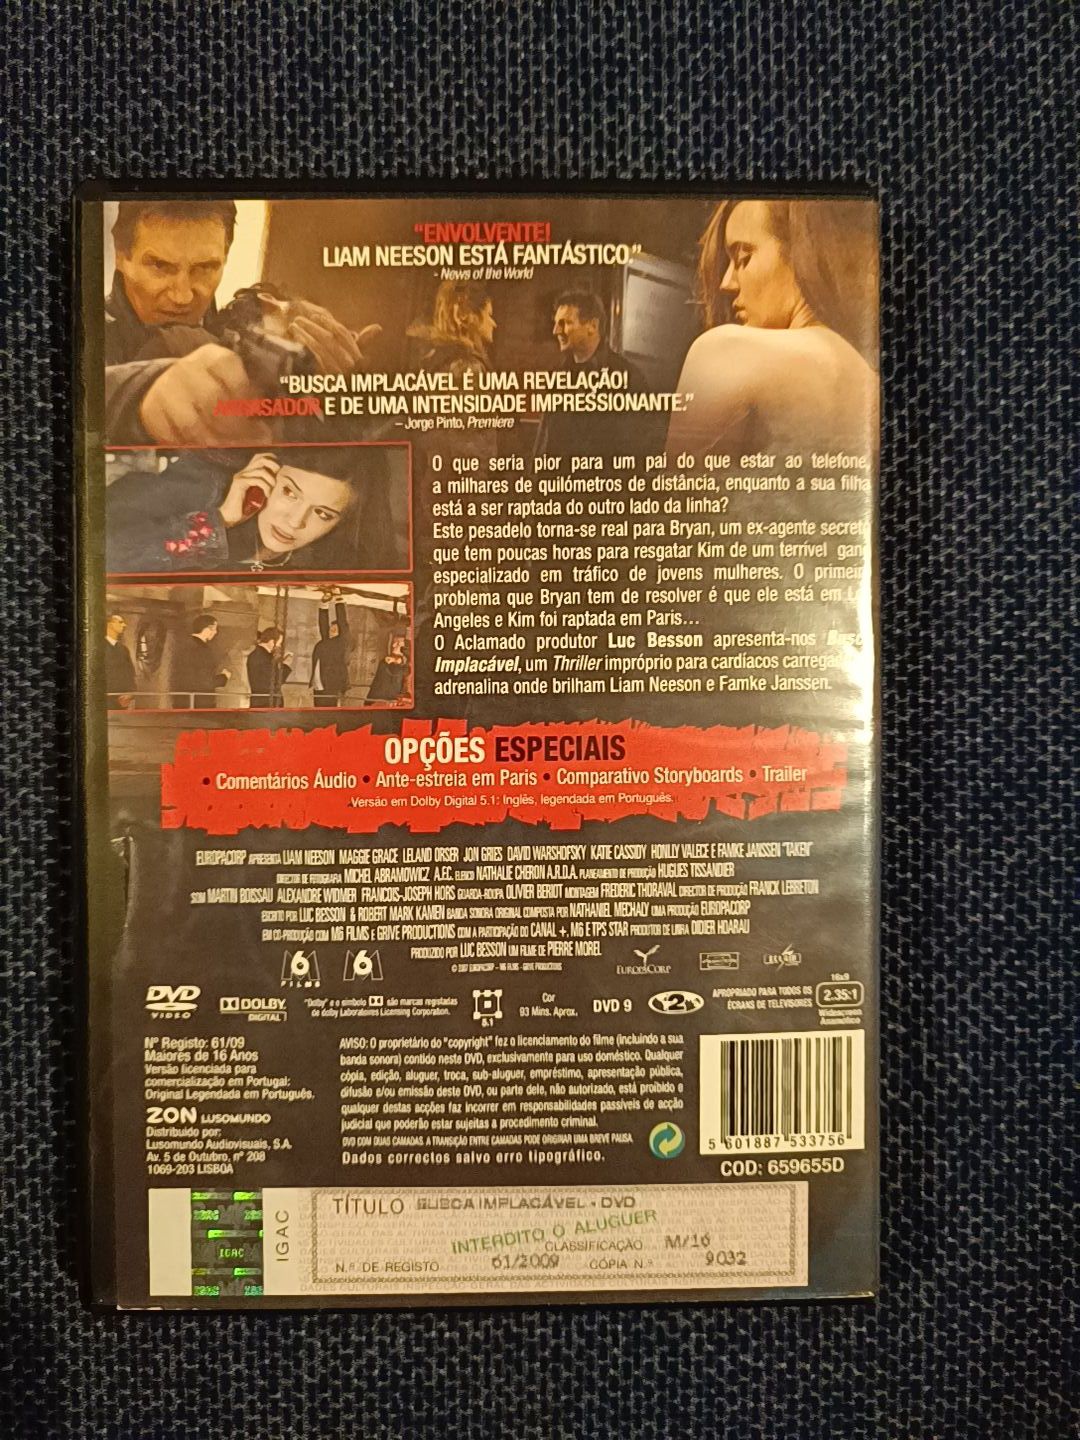 DVD do filme "Busca Implacável", Liam Neeson (portes grátis)